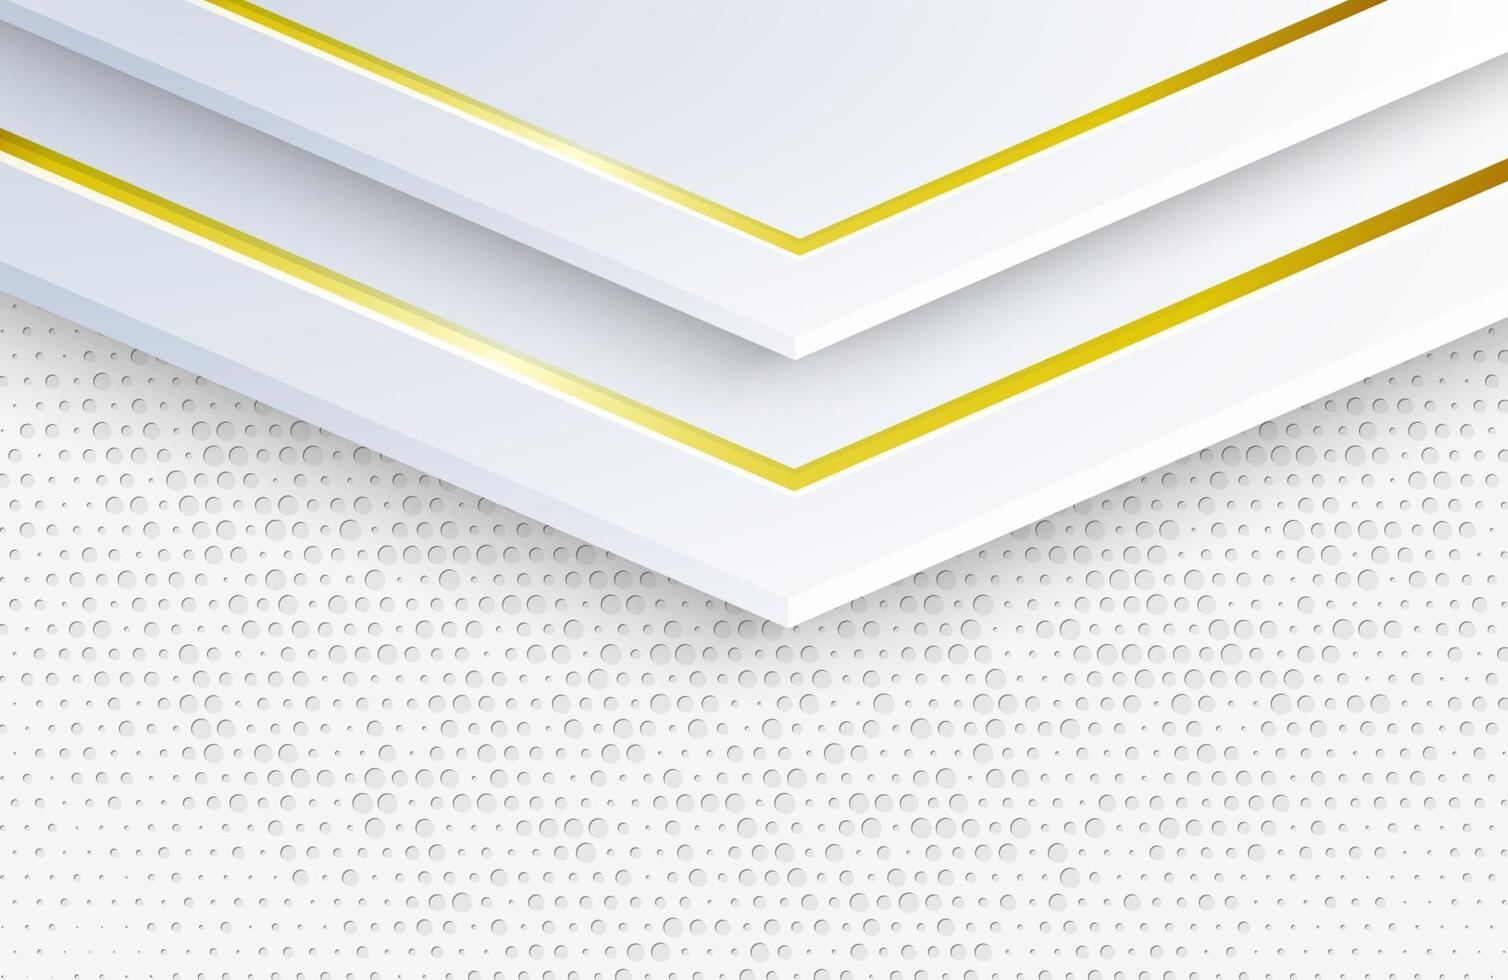 Fondo blanco elegante de lujo con adornos de oro concepto futurista vector